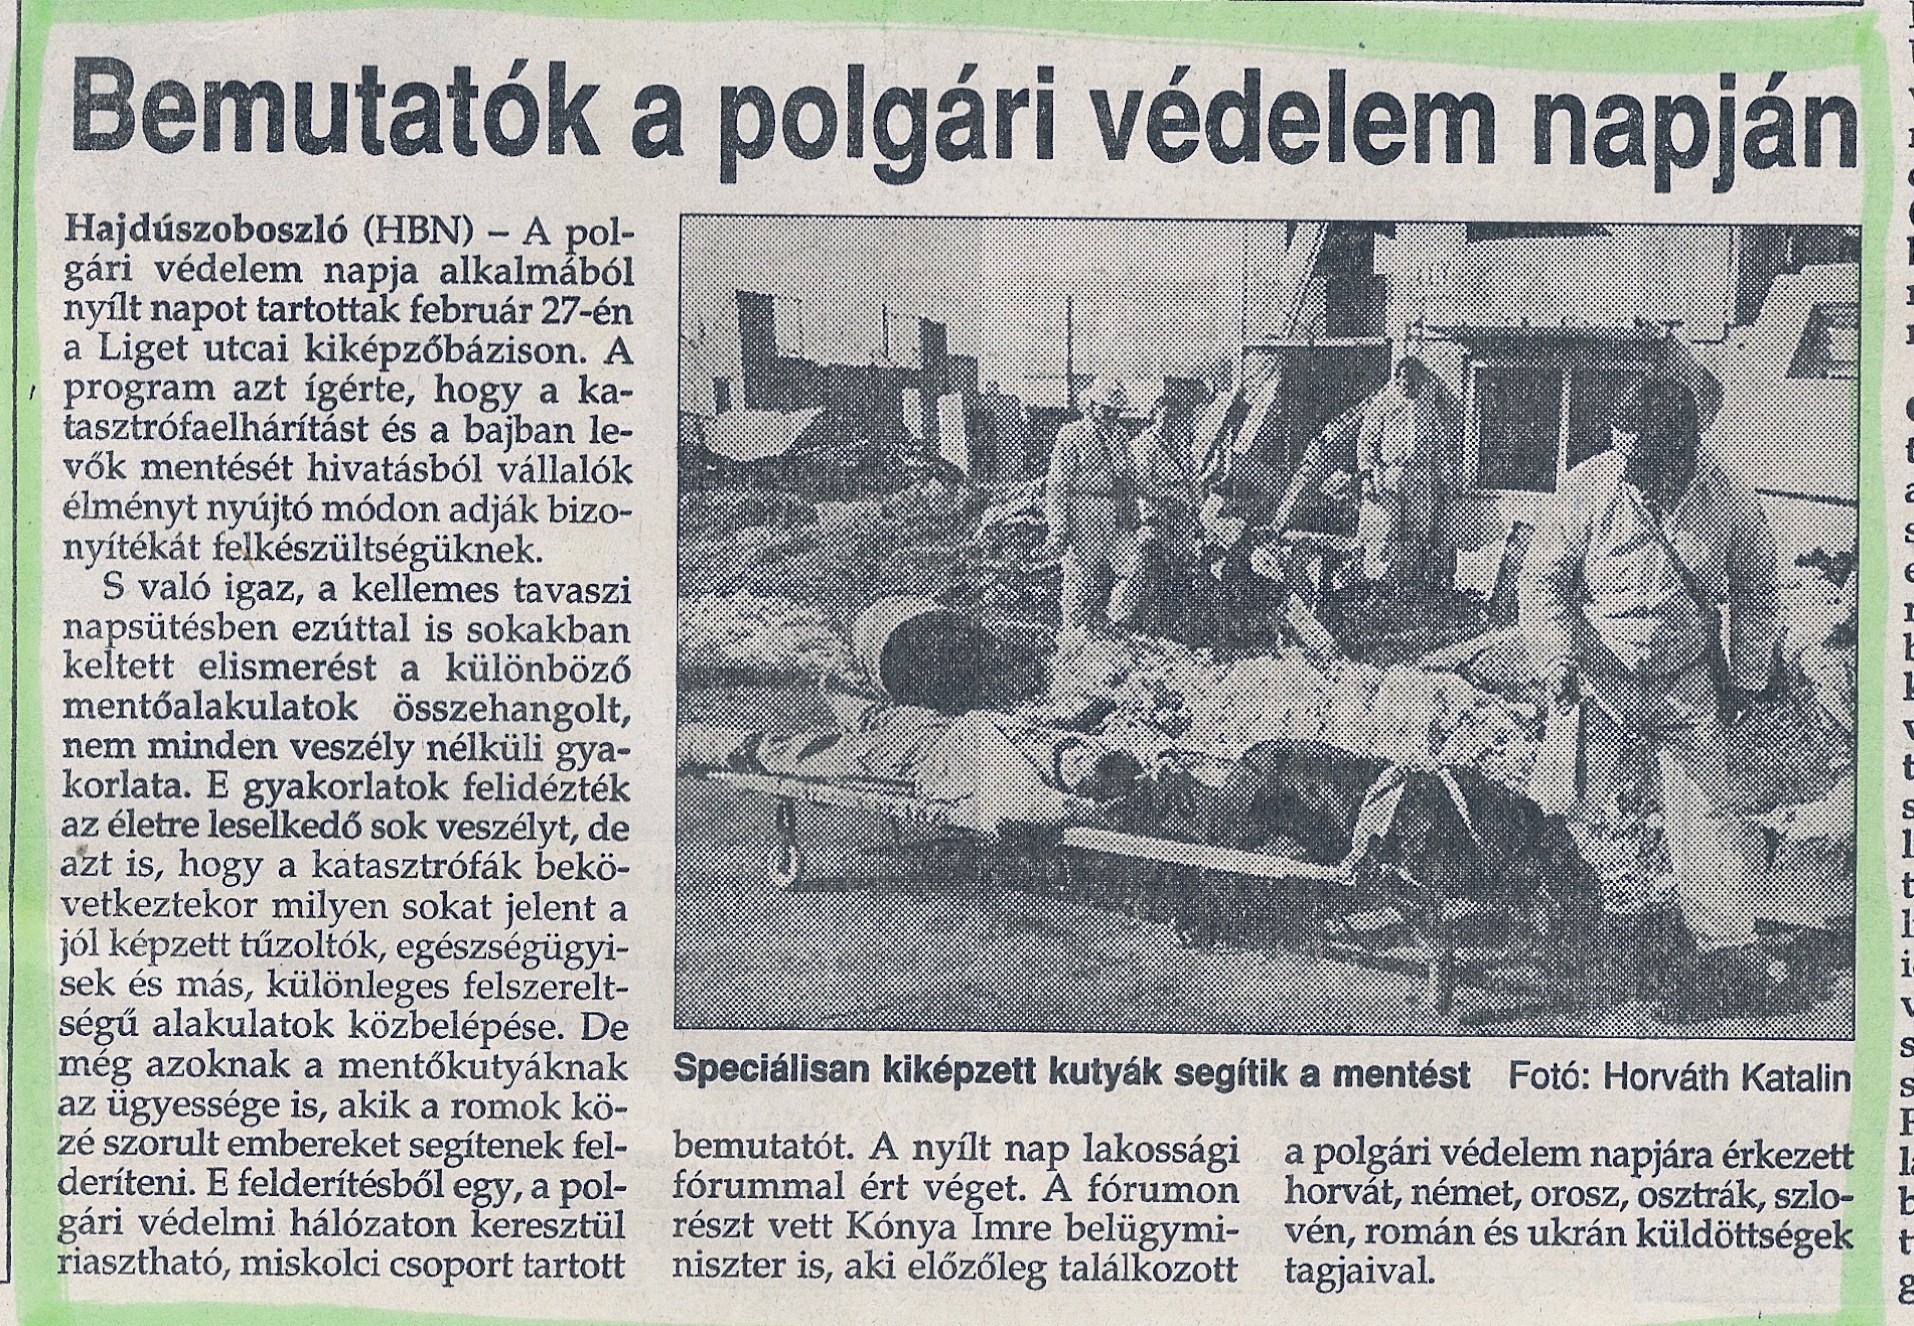 1994 Hajduszoboszló